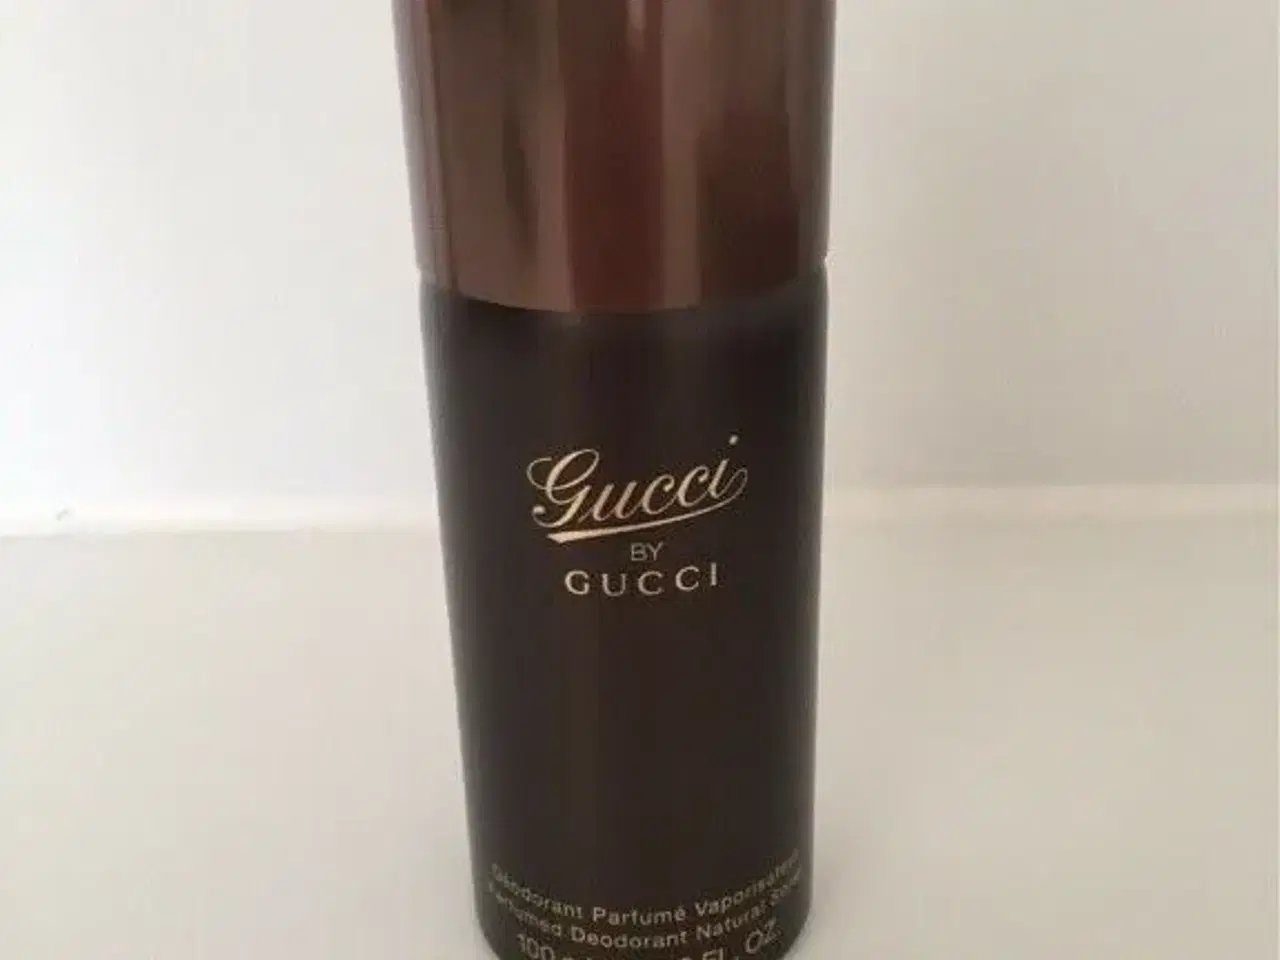 Billede 1 - Gucci spray